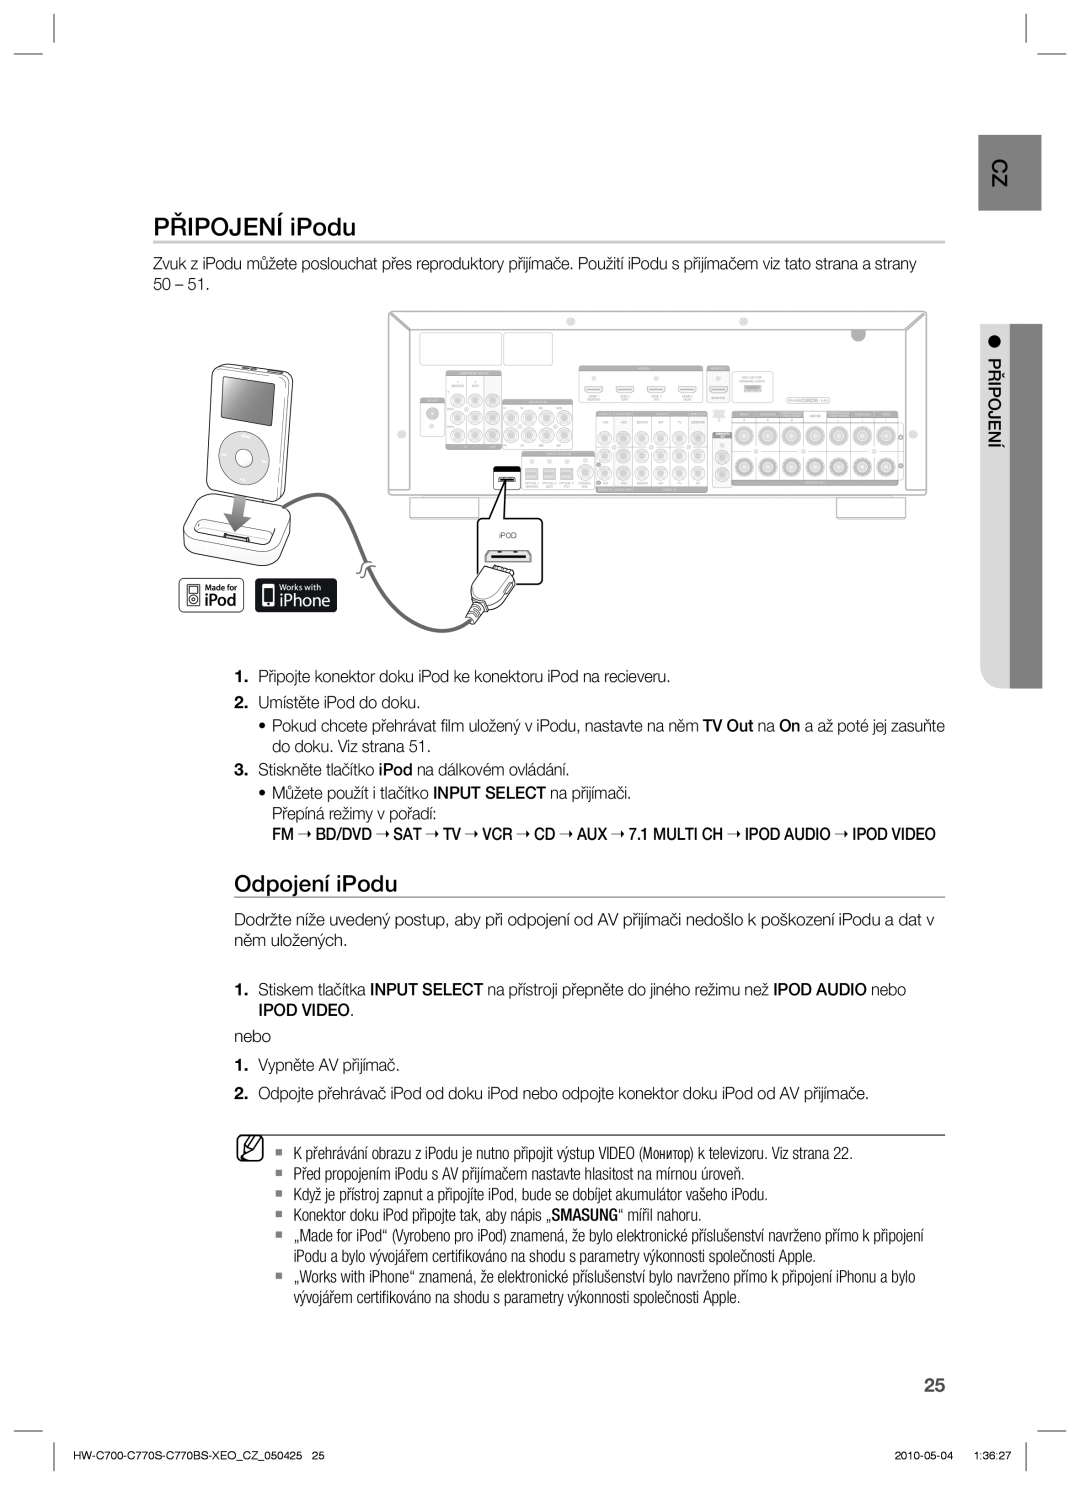 Samsung HW-C770S/EDC, HW-C700/EDC, HW-C770S/XEE manual PŘIPOJENÍ iPodu, Odpojení iPodu 